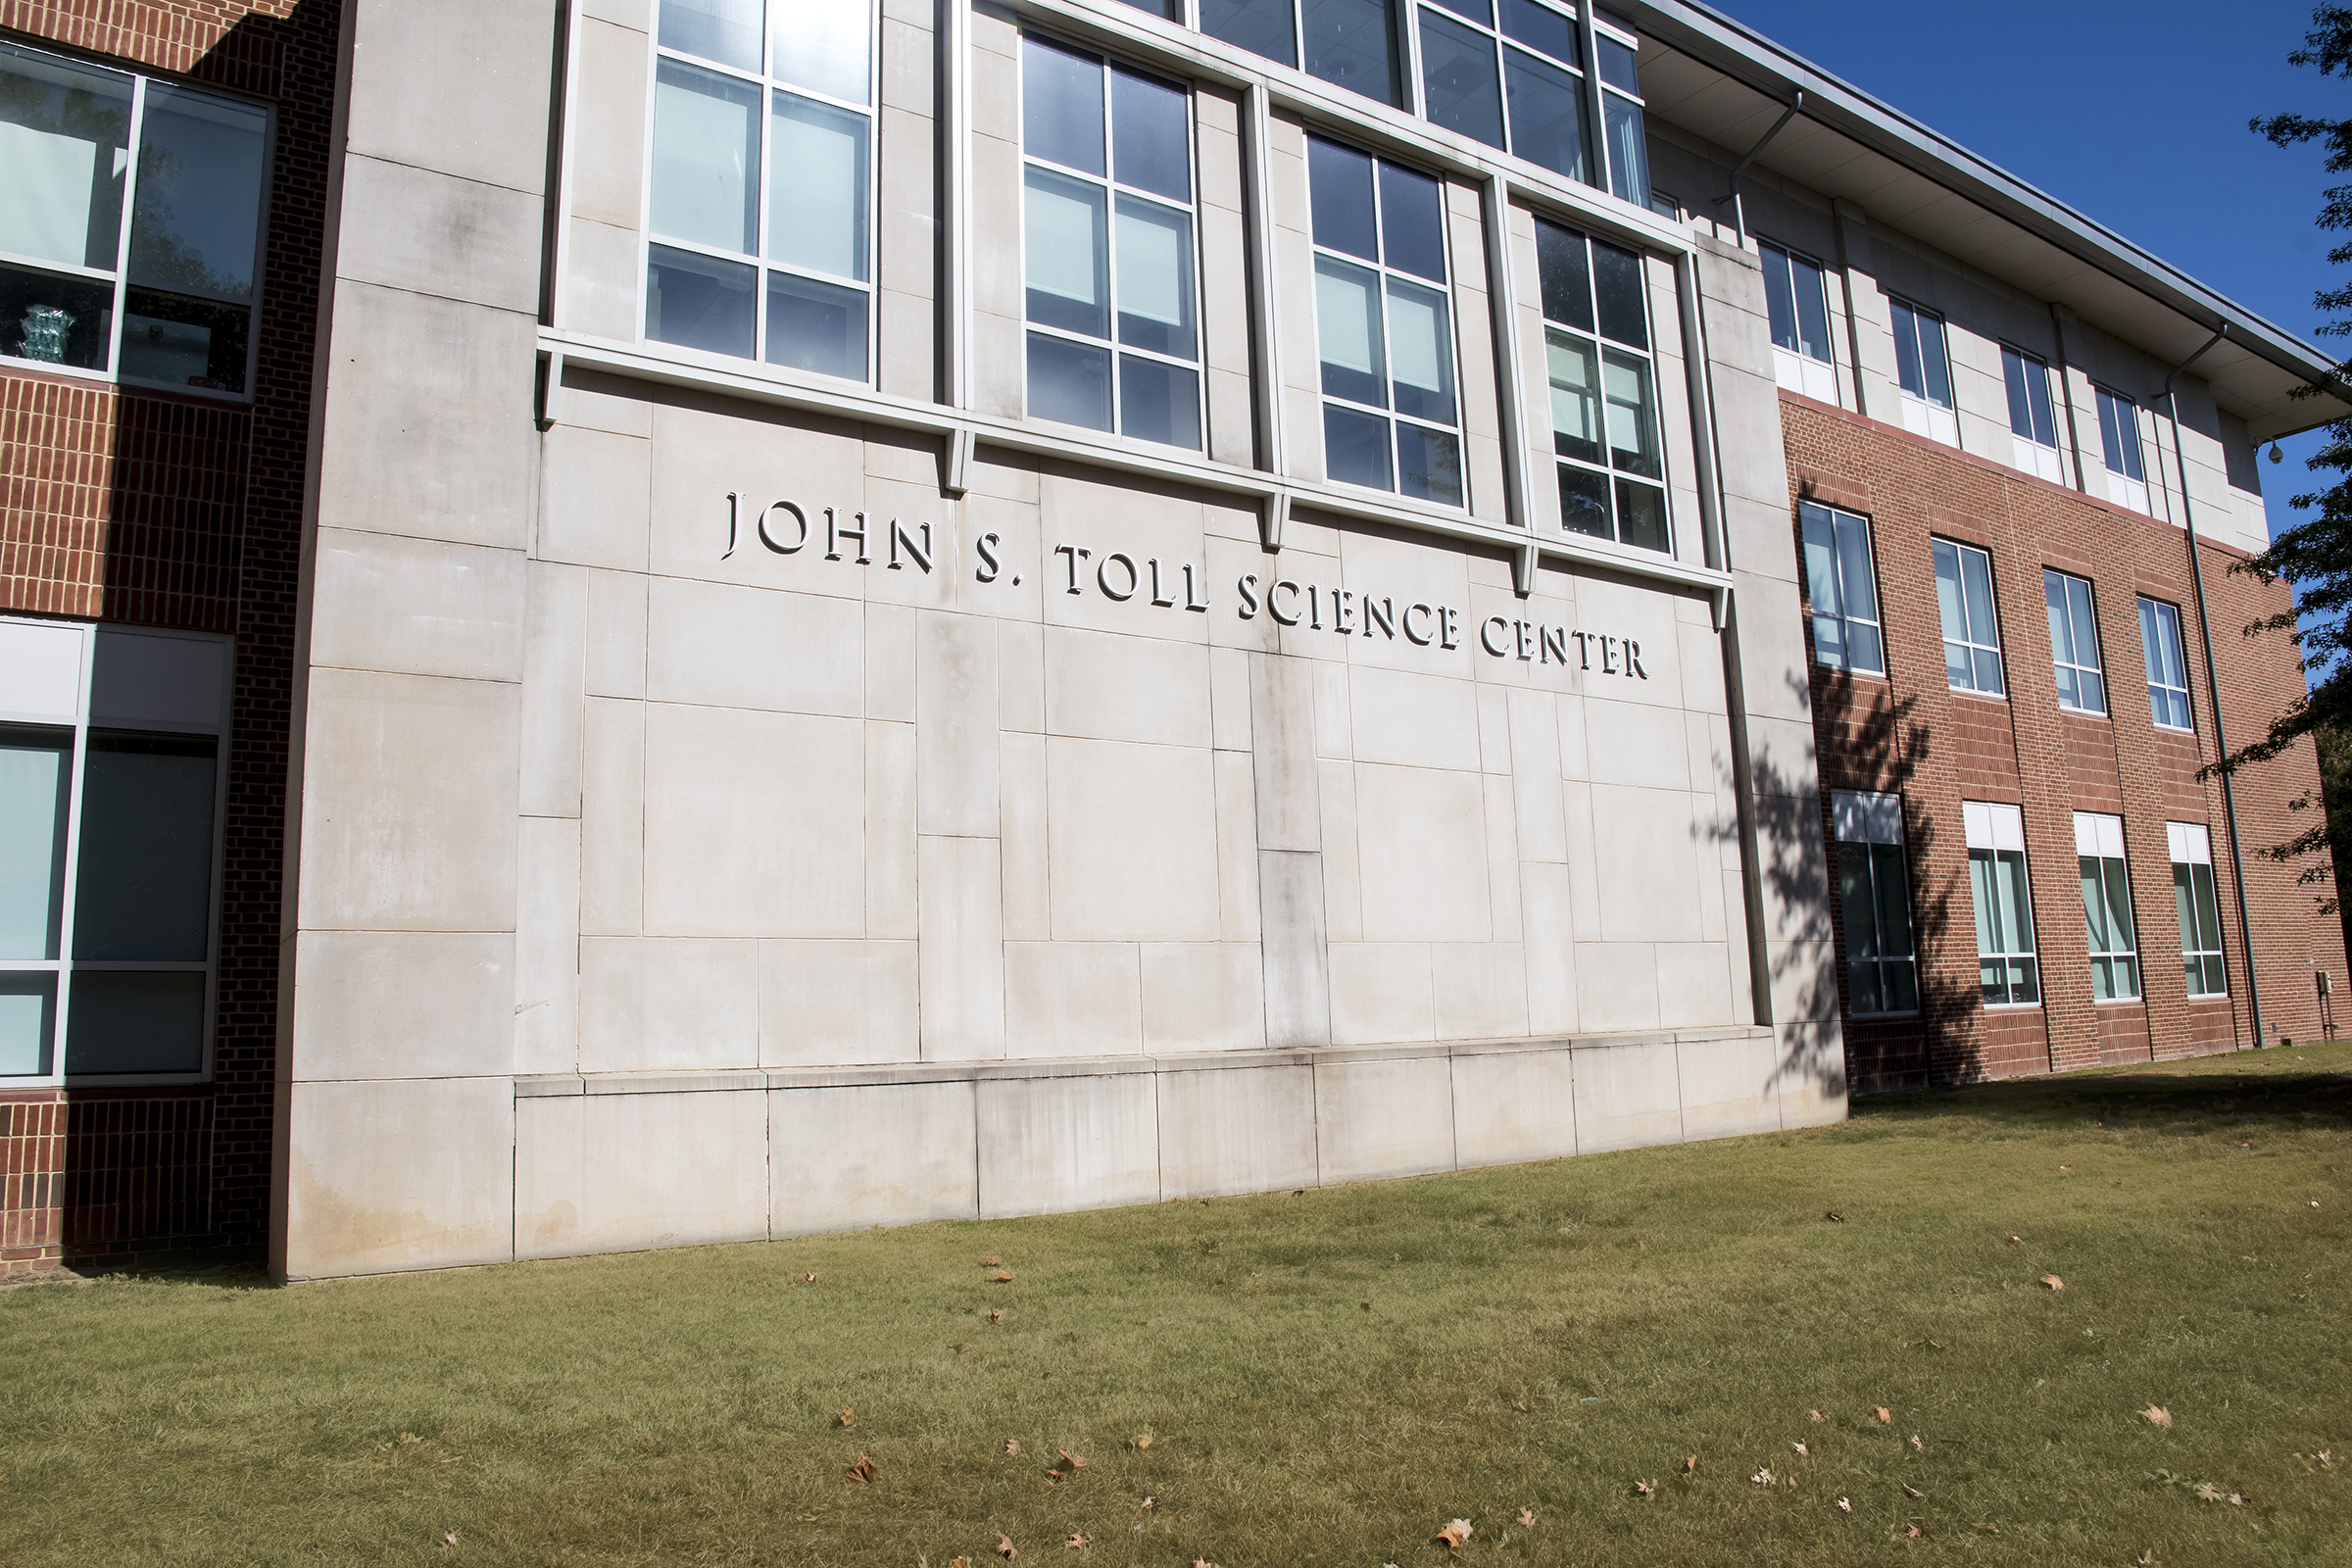 John S. Toll Science Center